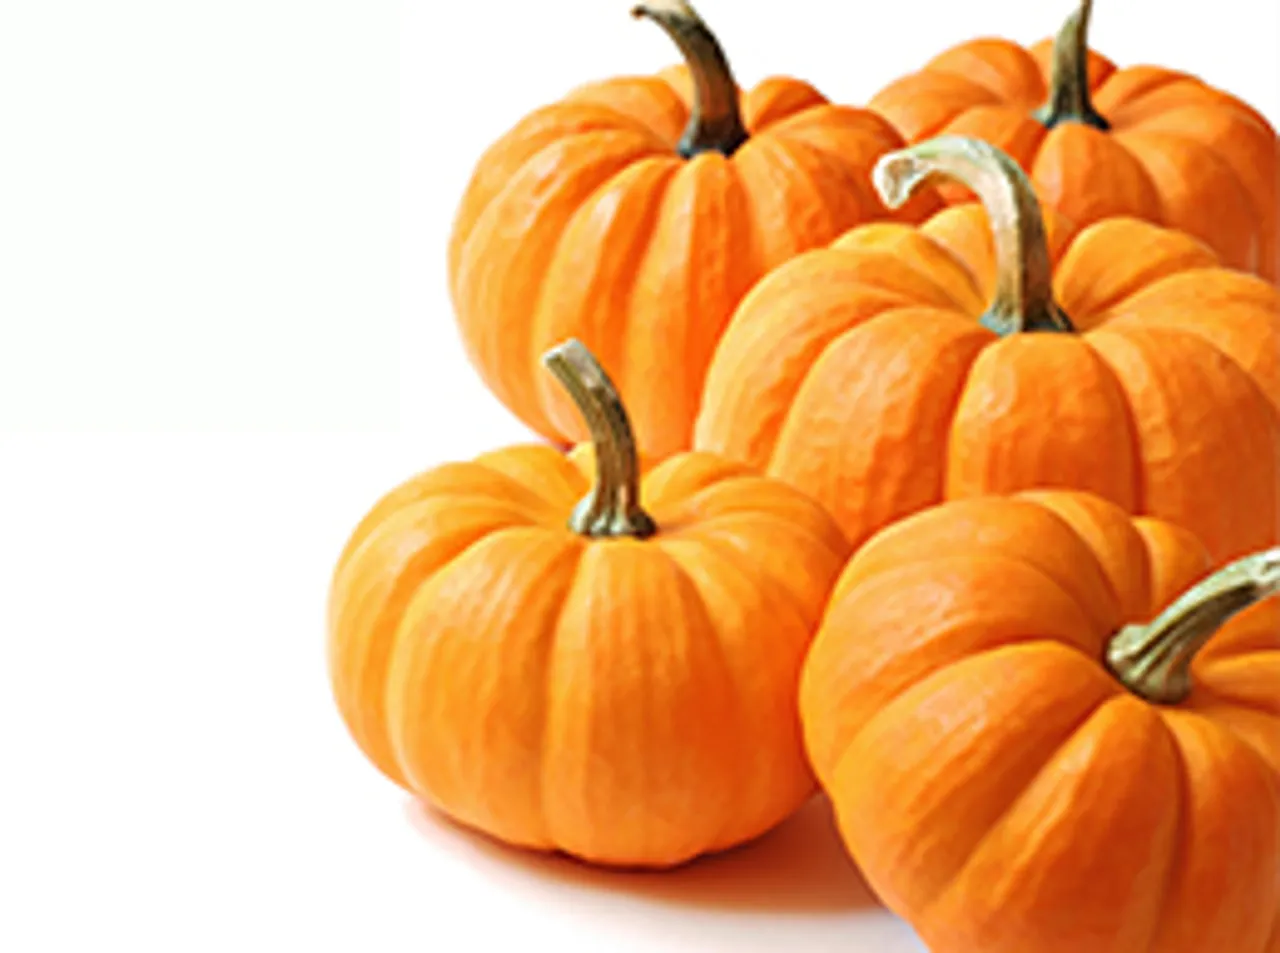 6 best ways to eat pumpkin